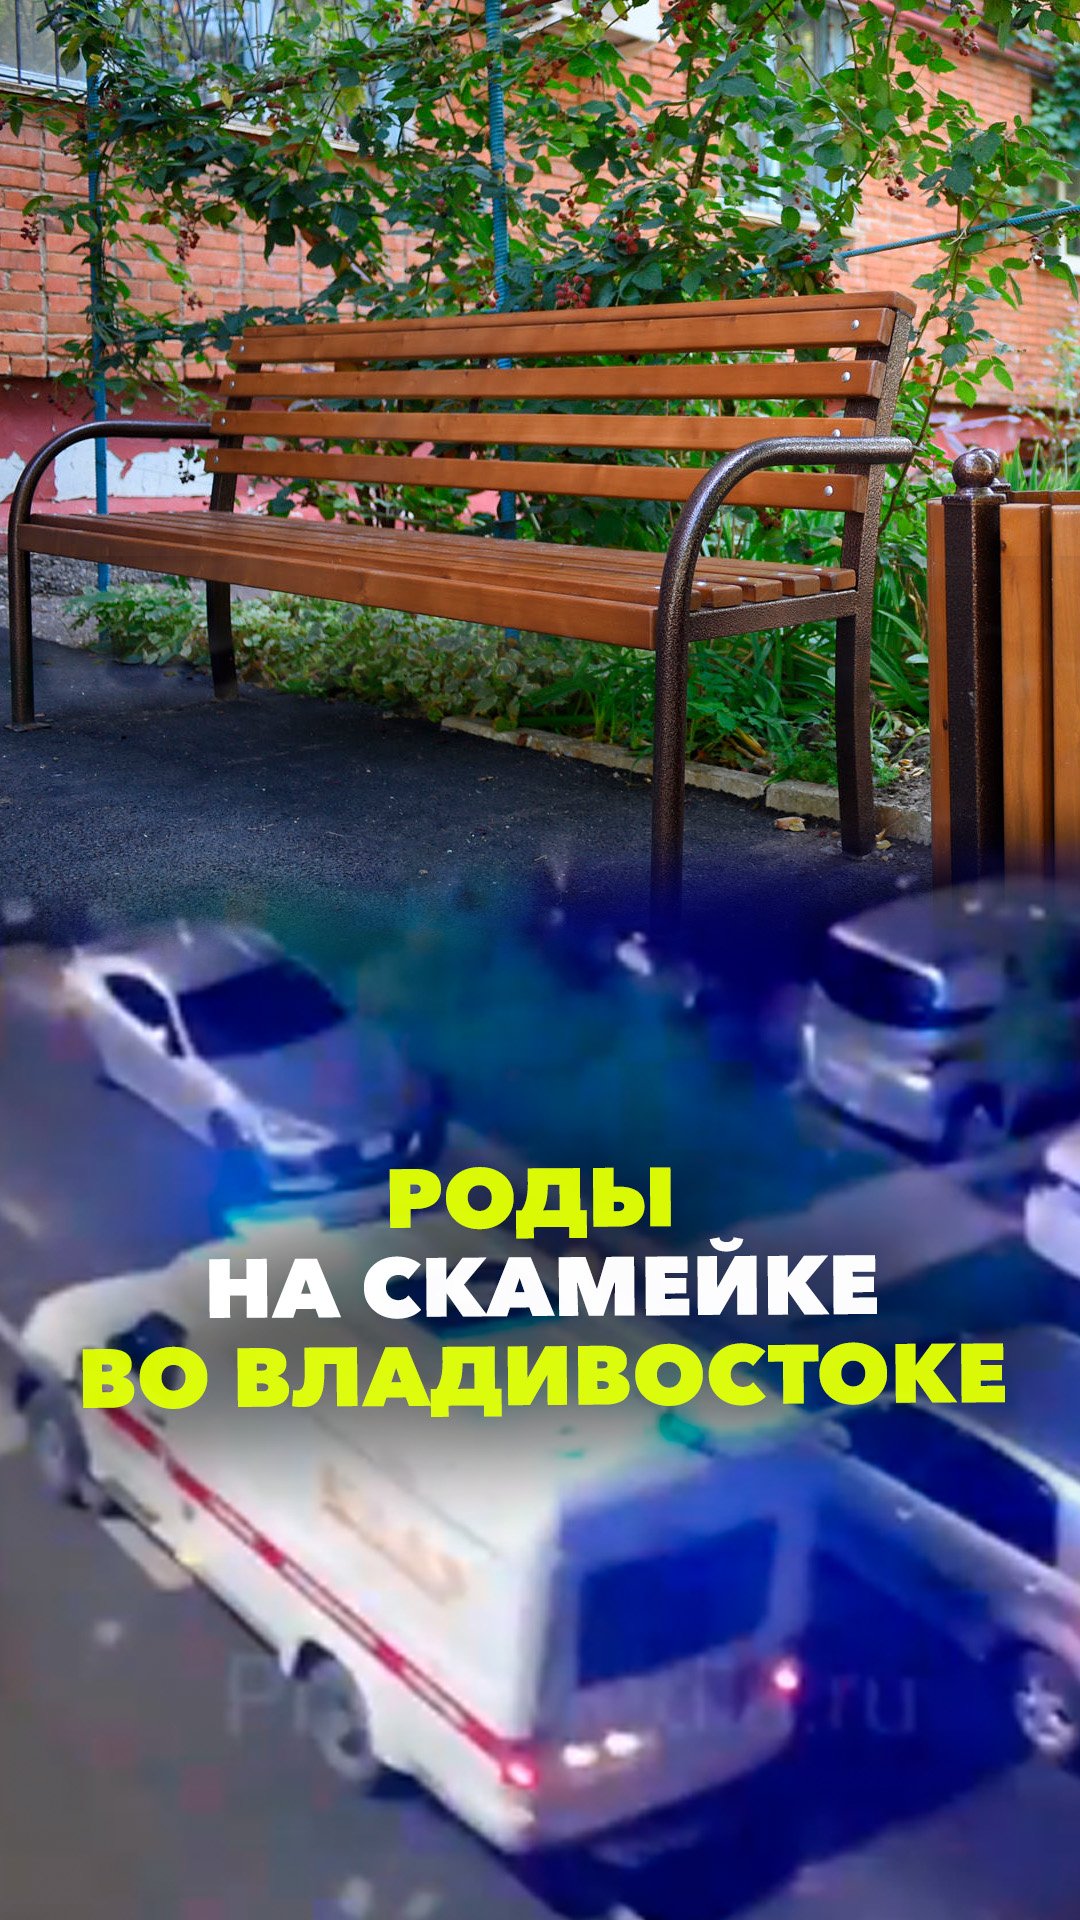 Женщина родила на скамейке во дворе, не дождавшись скорой помощи во Владивостоке